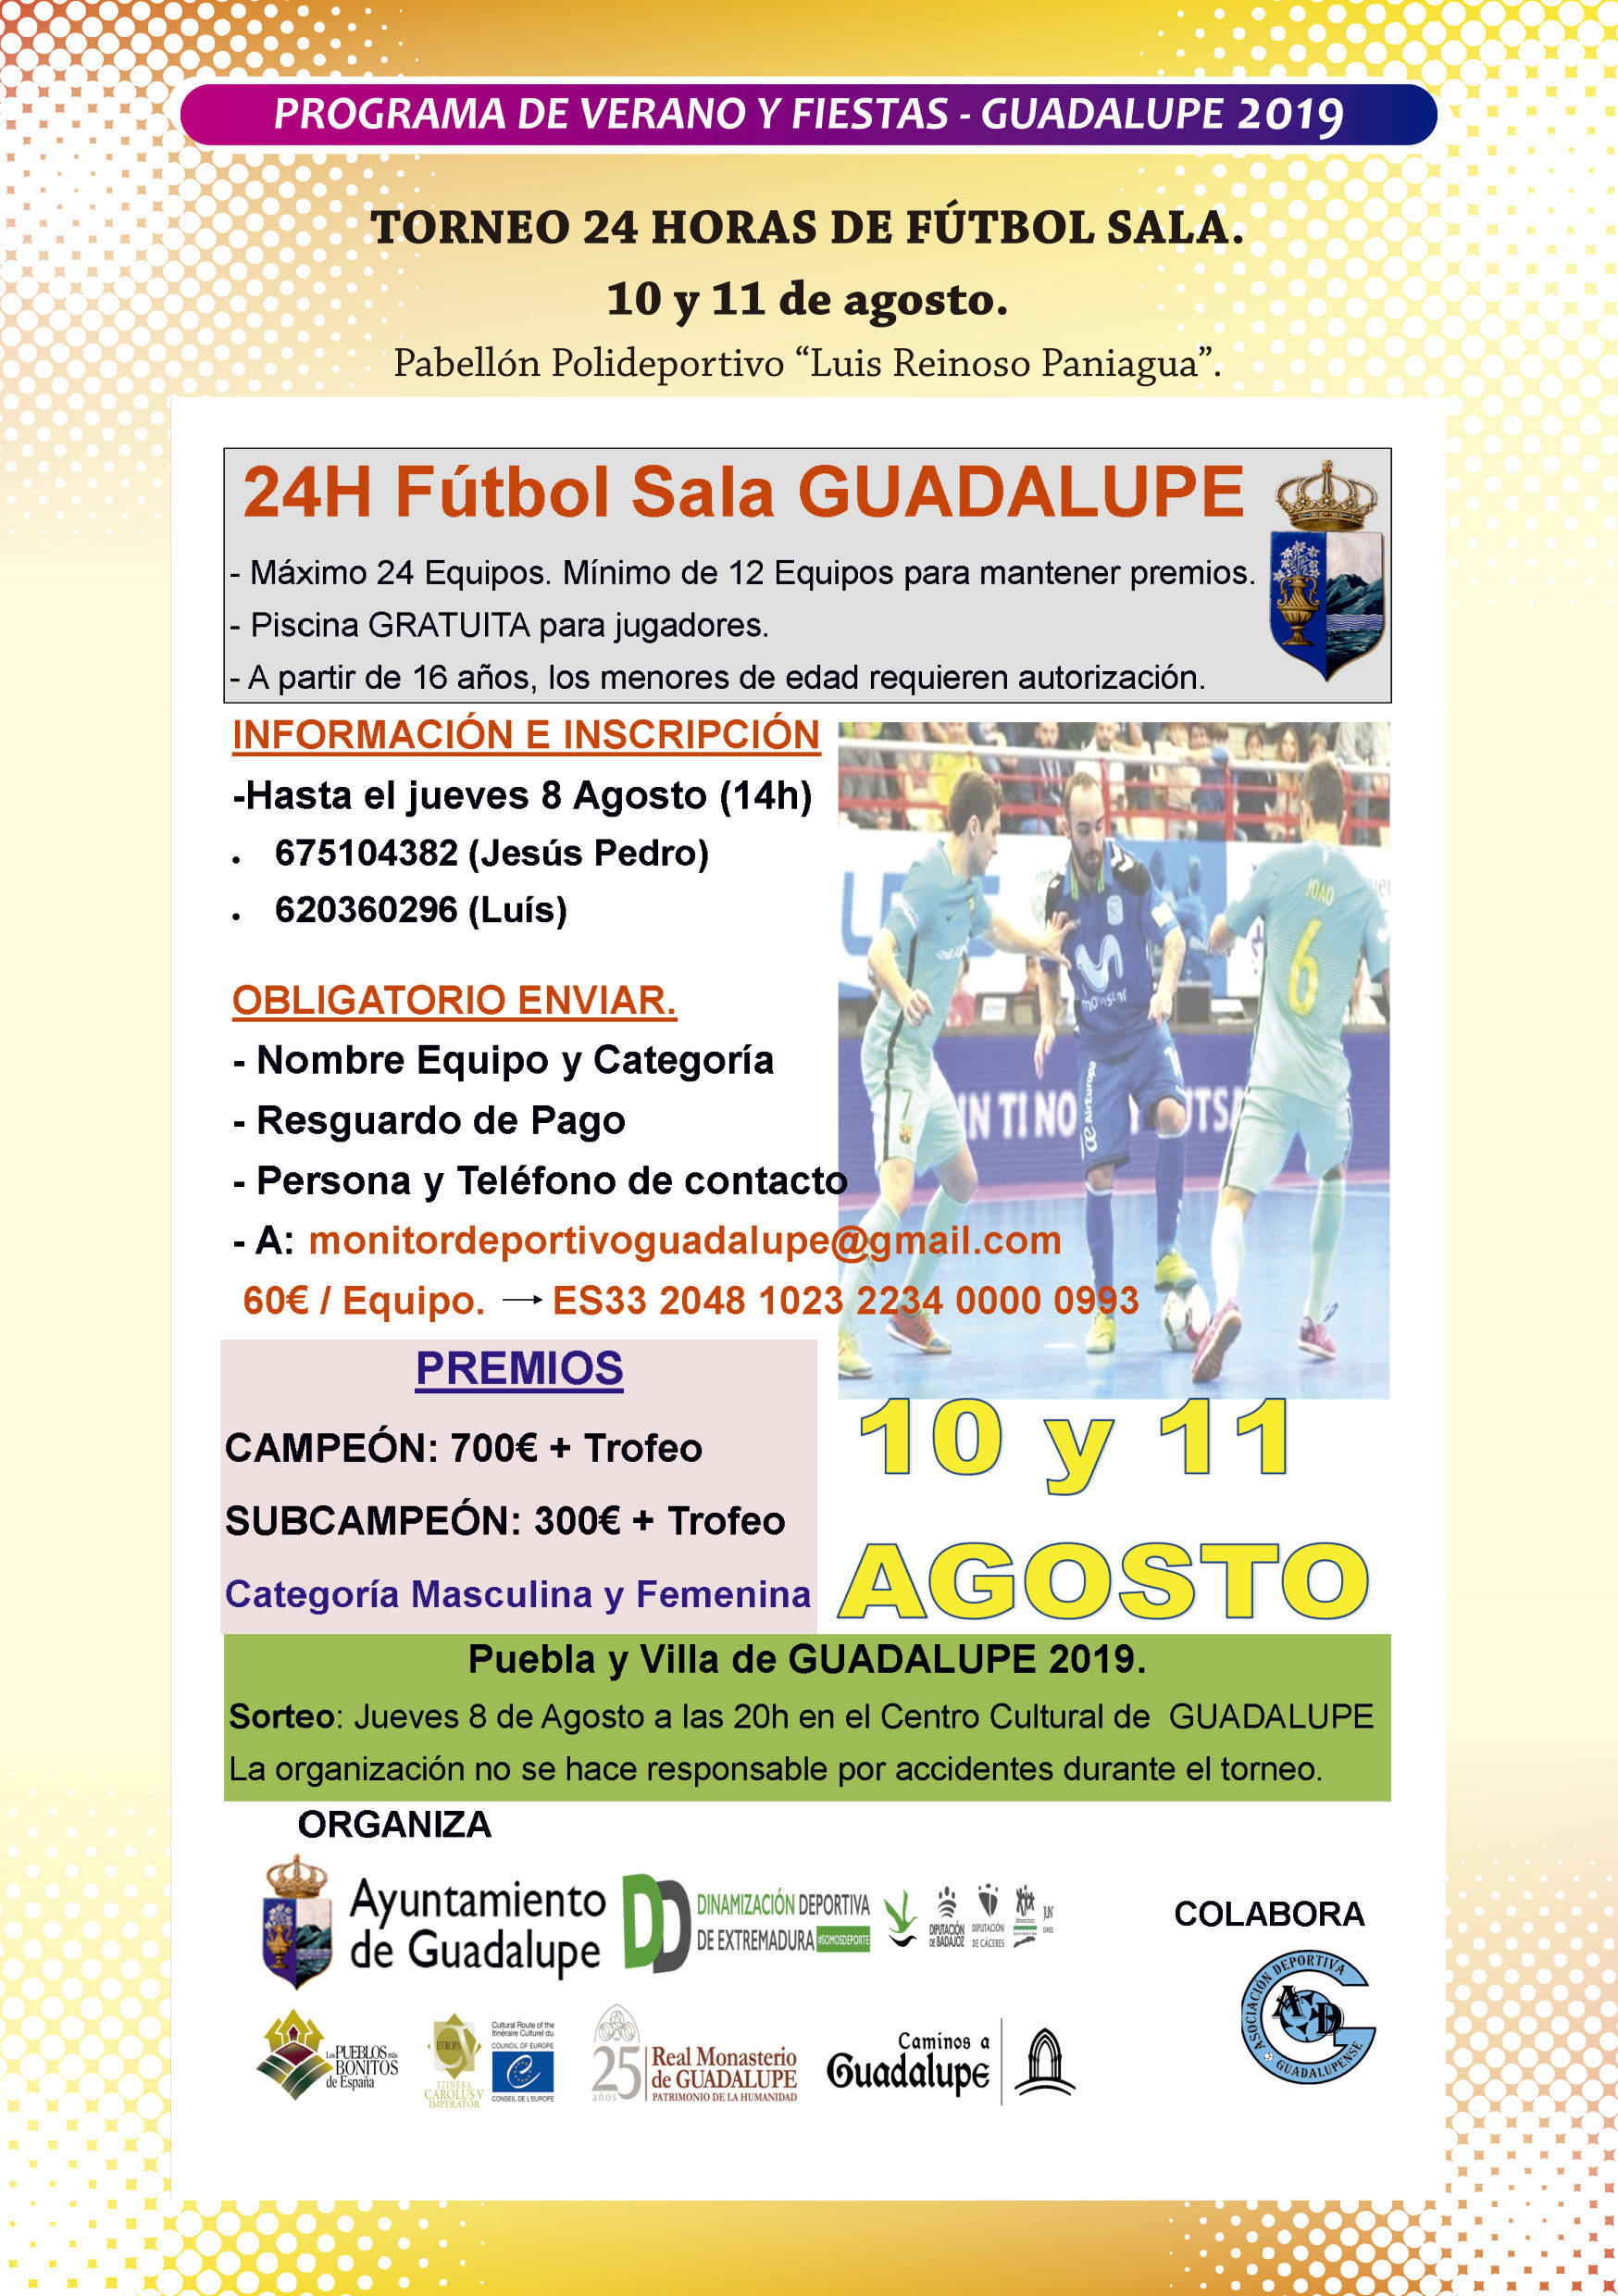 Programa de verano y fiestas 2019 - Guadalupe (Cáceres) 8